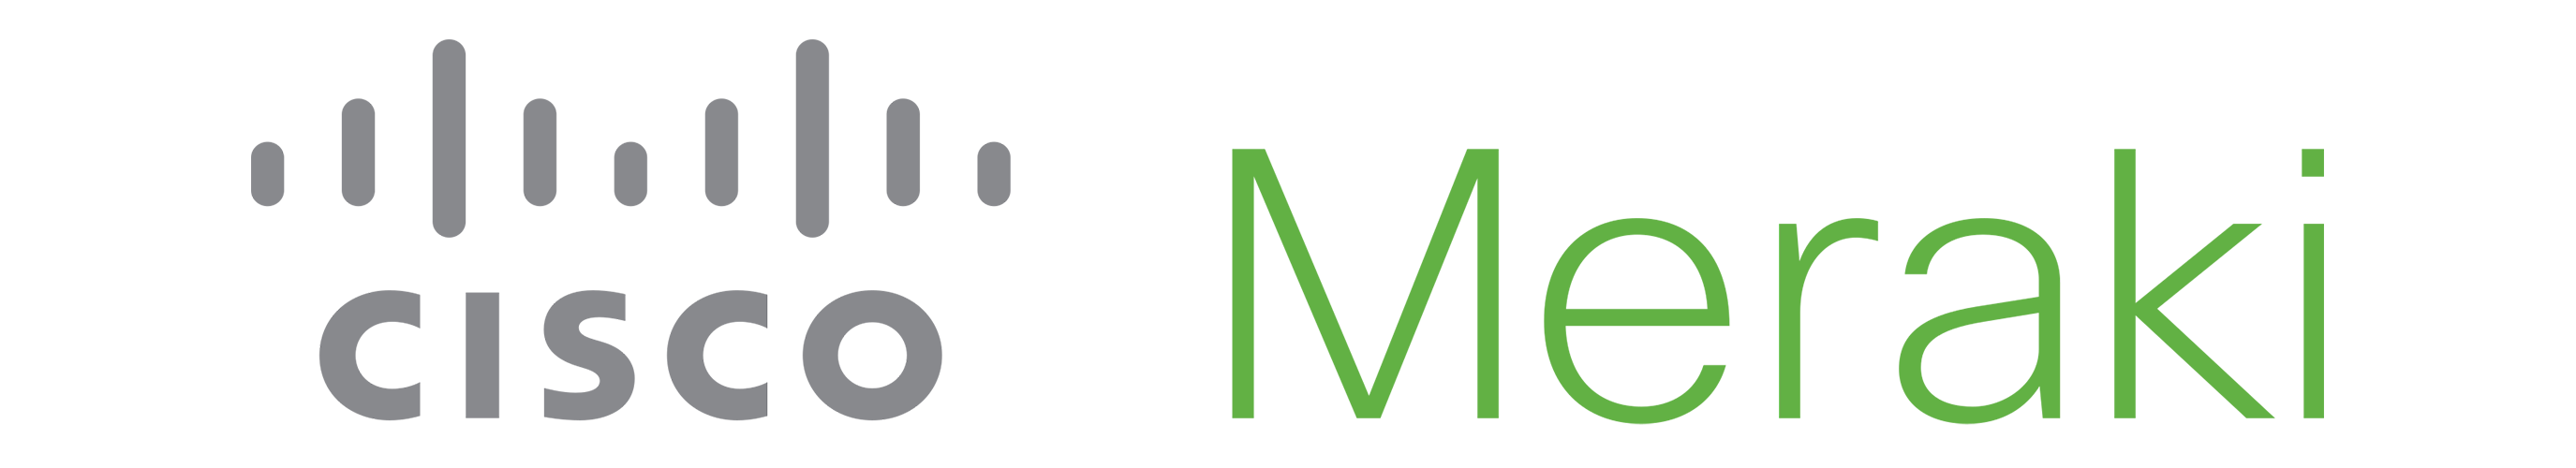 Cisco-Meraki-logo